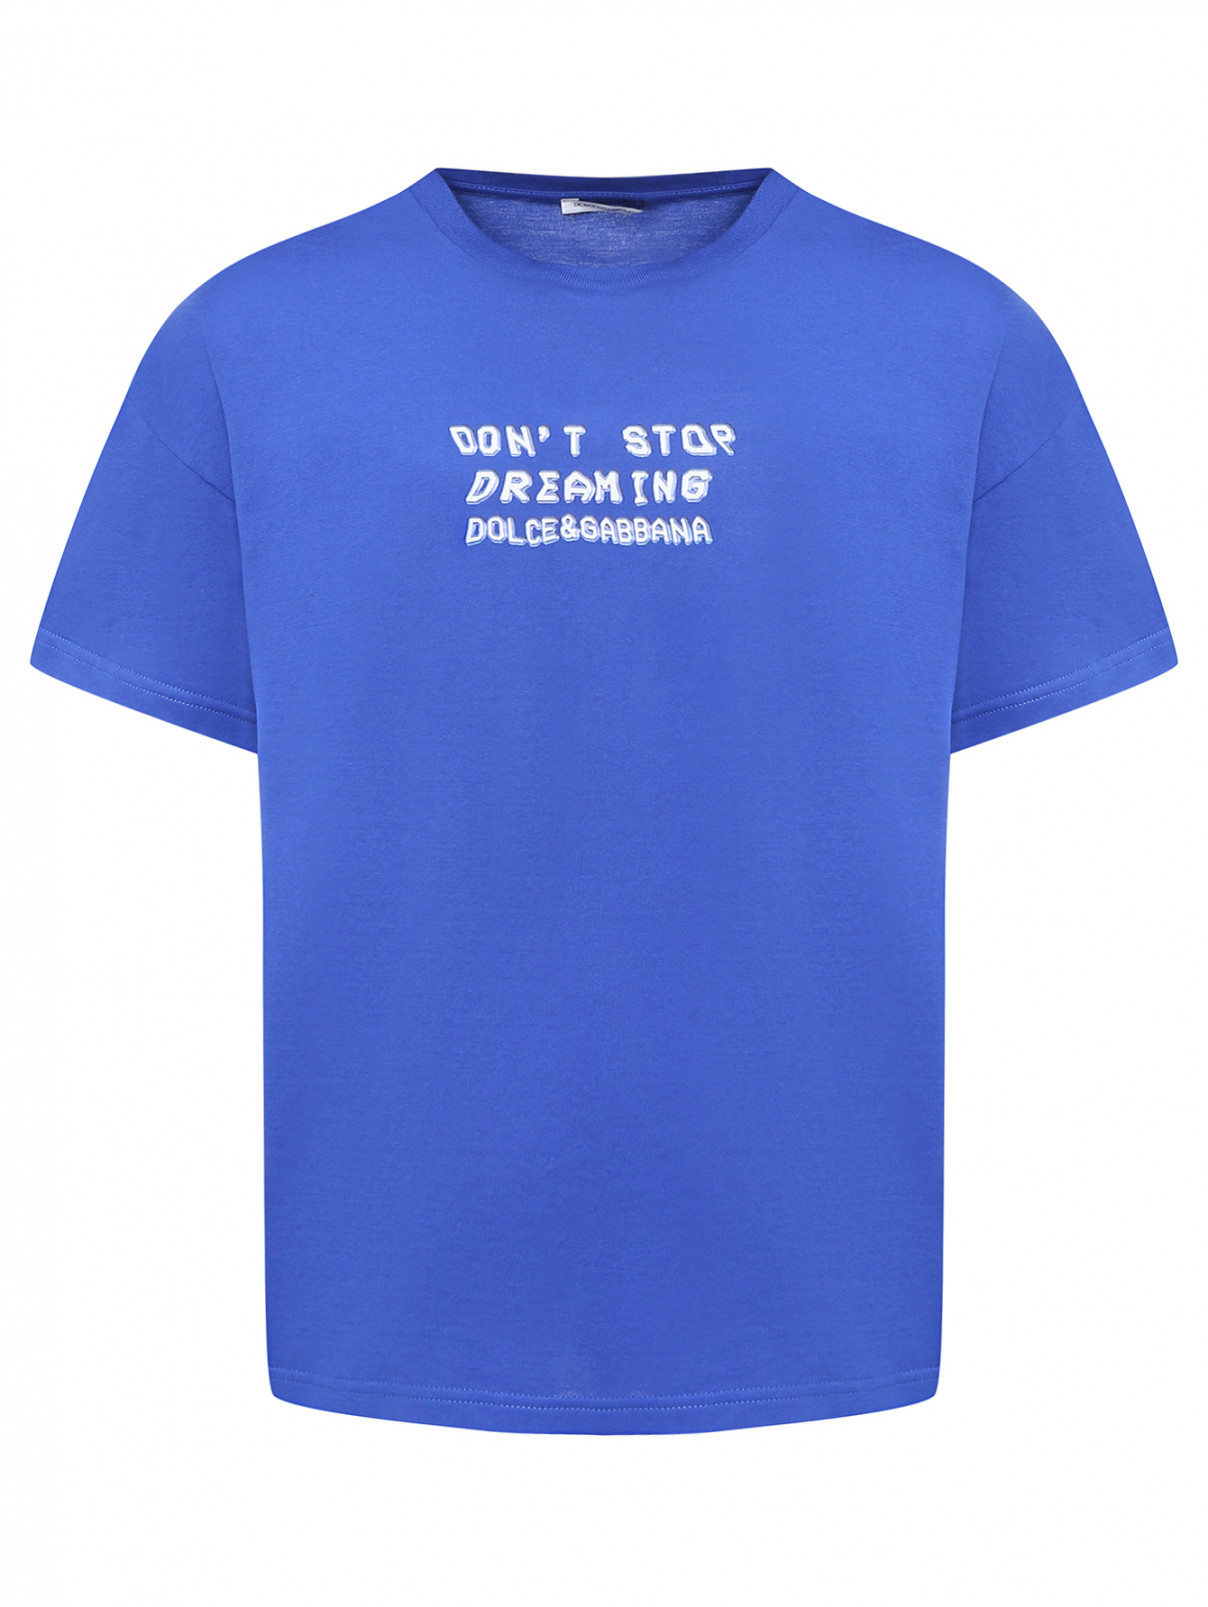 Трикотажная футболка с принтом Dolce & Gabbana  –  Общий вид  – Цвет:  Синий